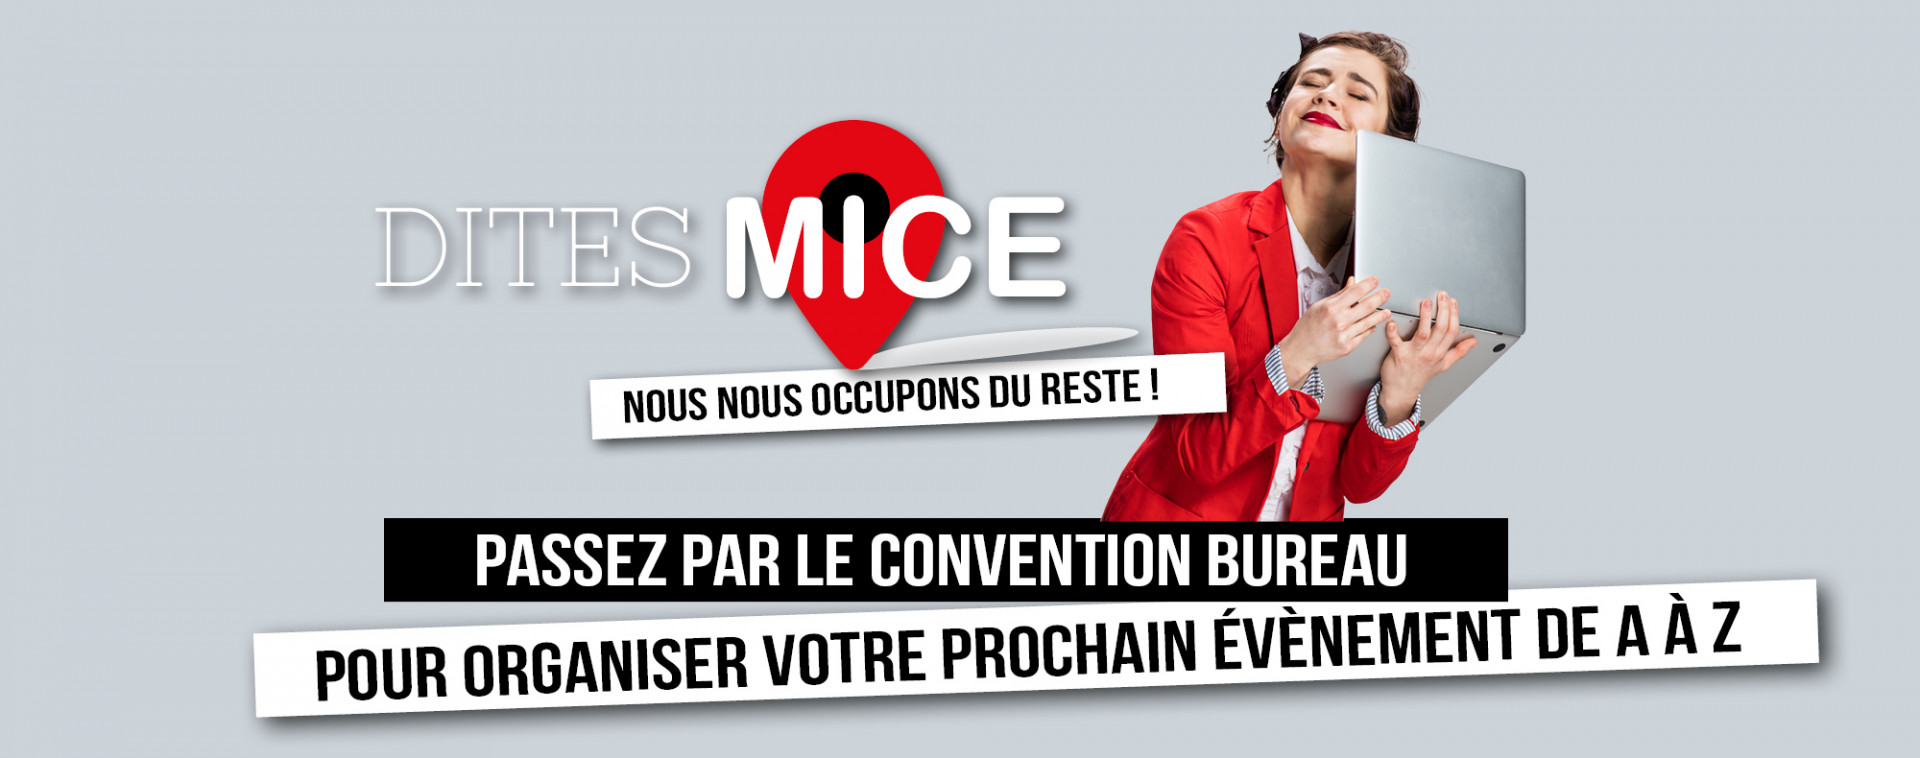 Dites MICE - Votre évènement de A à Z - Convention Bureau ▪️ MICE Liège-Spa | © Getty Images